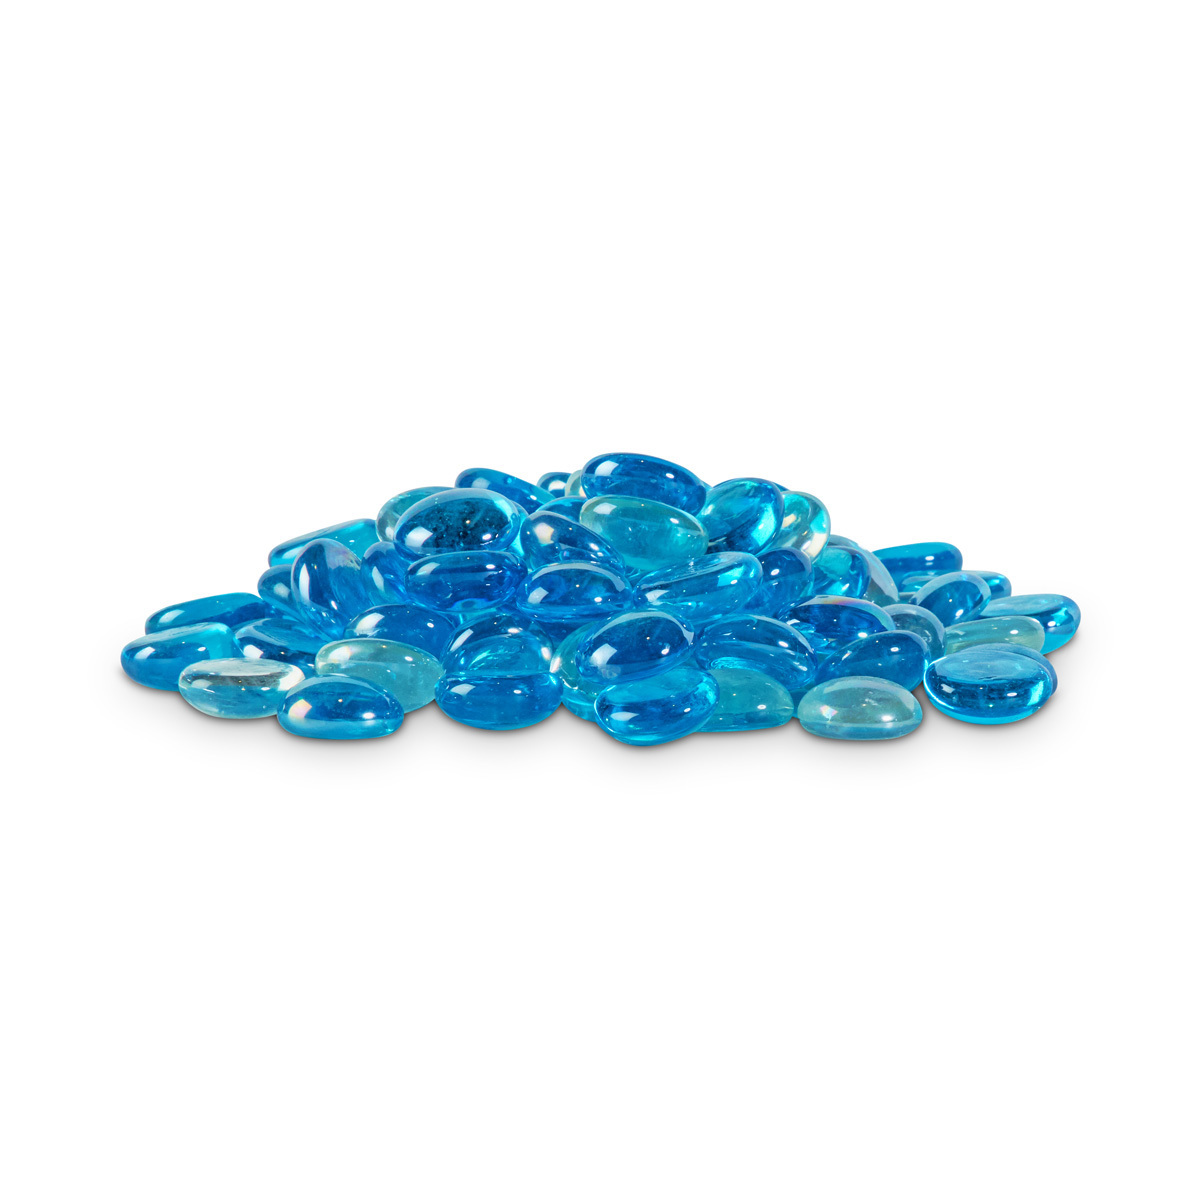 Imagitarium Ocean Blue Gemas Azules para Acuario, 450 g